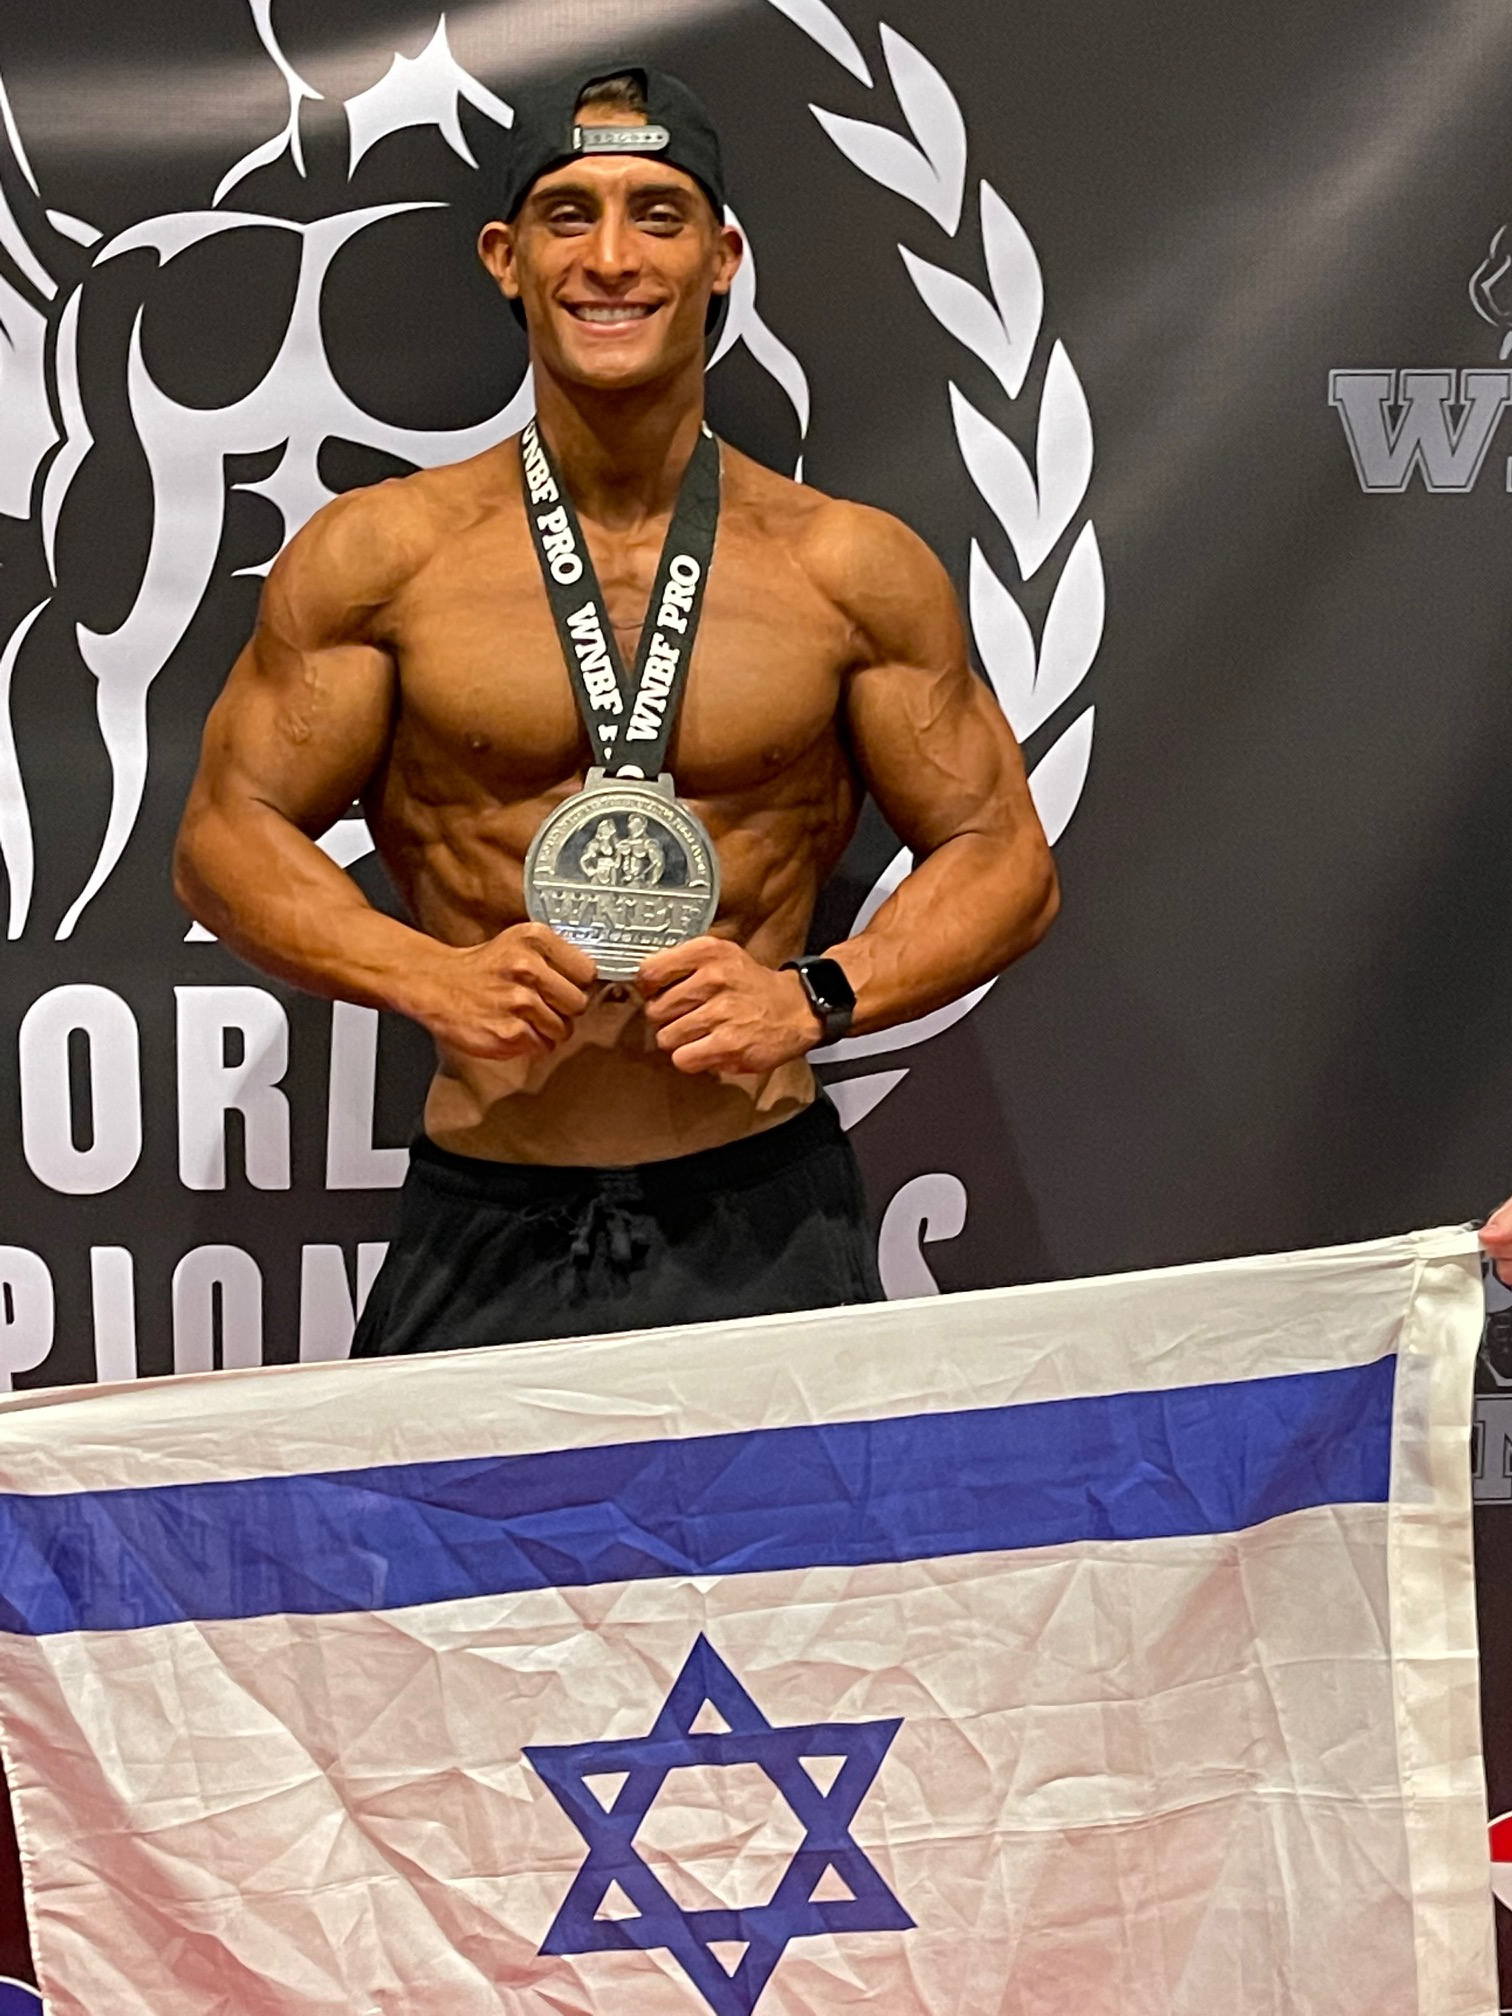 Tilsvarende aften Korn Israeli natural bodybuilder wins 2nd place at world championship